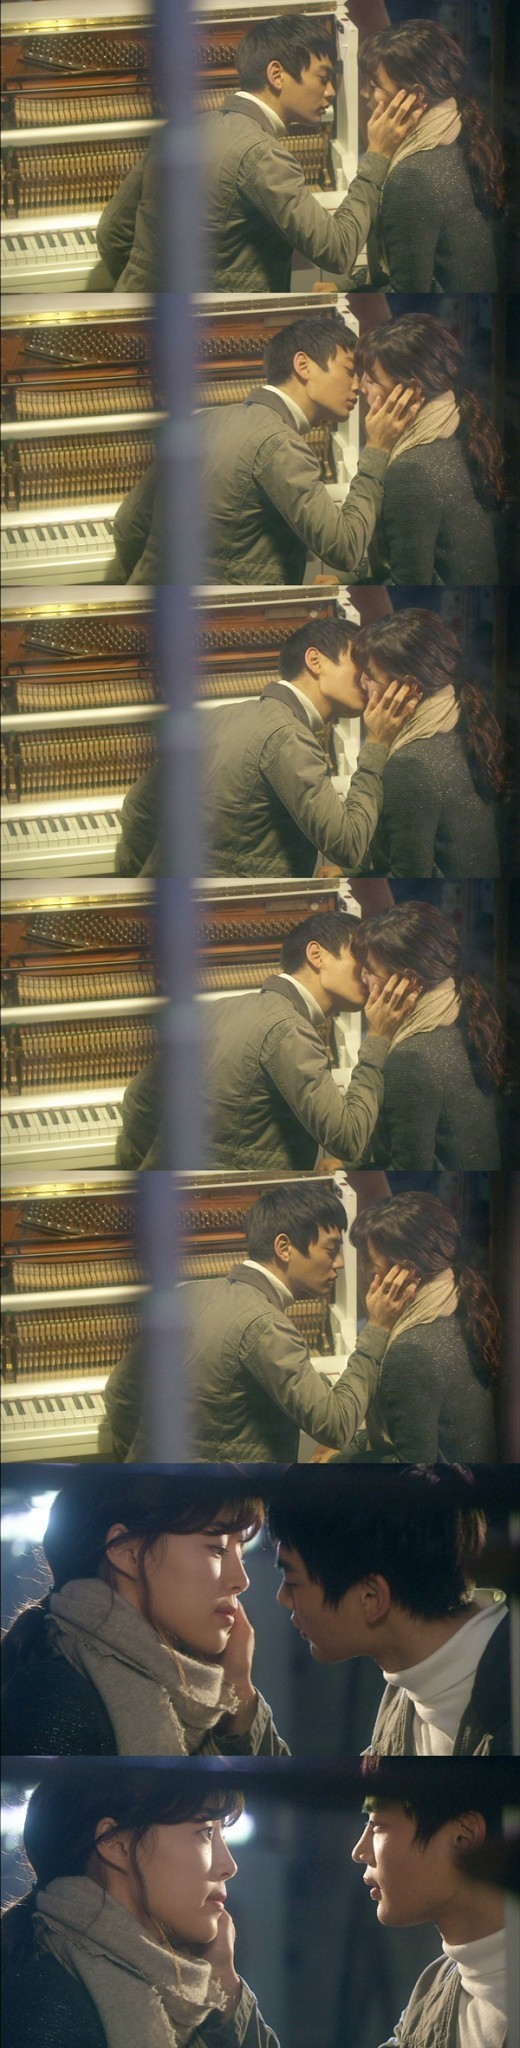 Minho bučinio ir verkimo scenos iš dramos 'Pianist' Minho-kissing-scene-shinee-17267691-520-2048